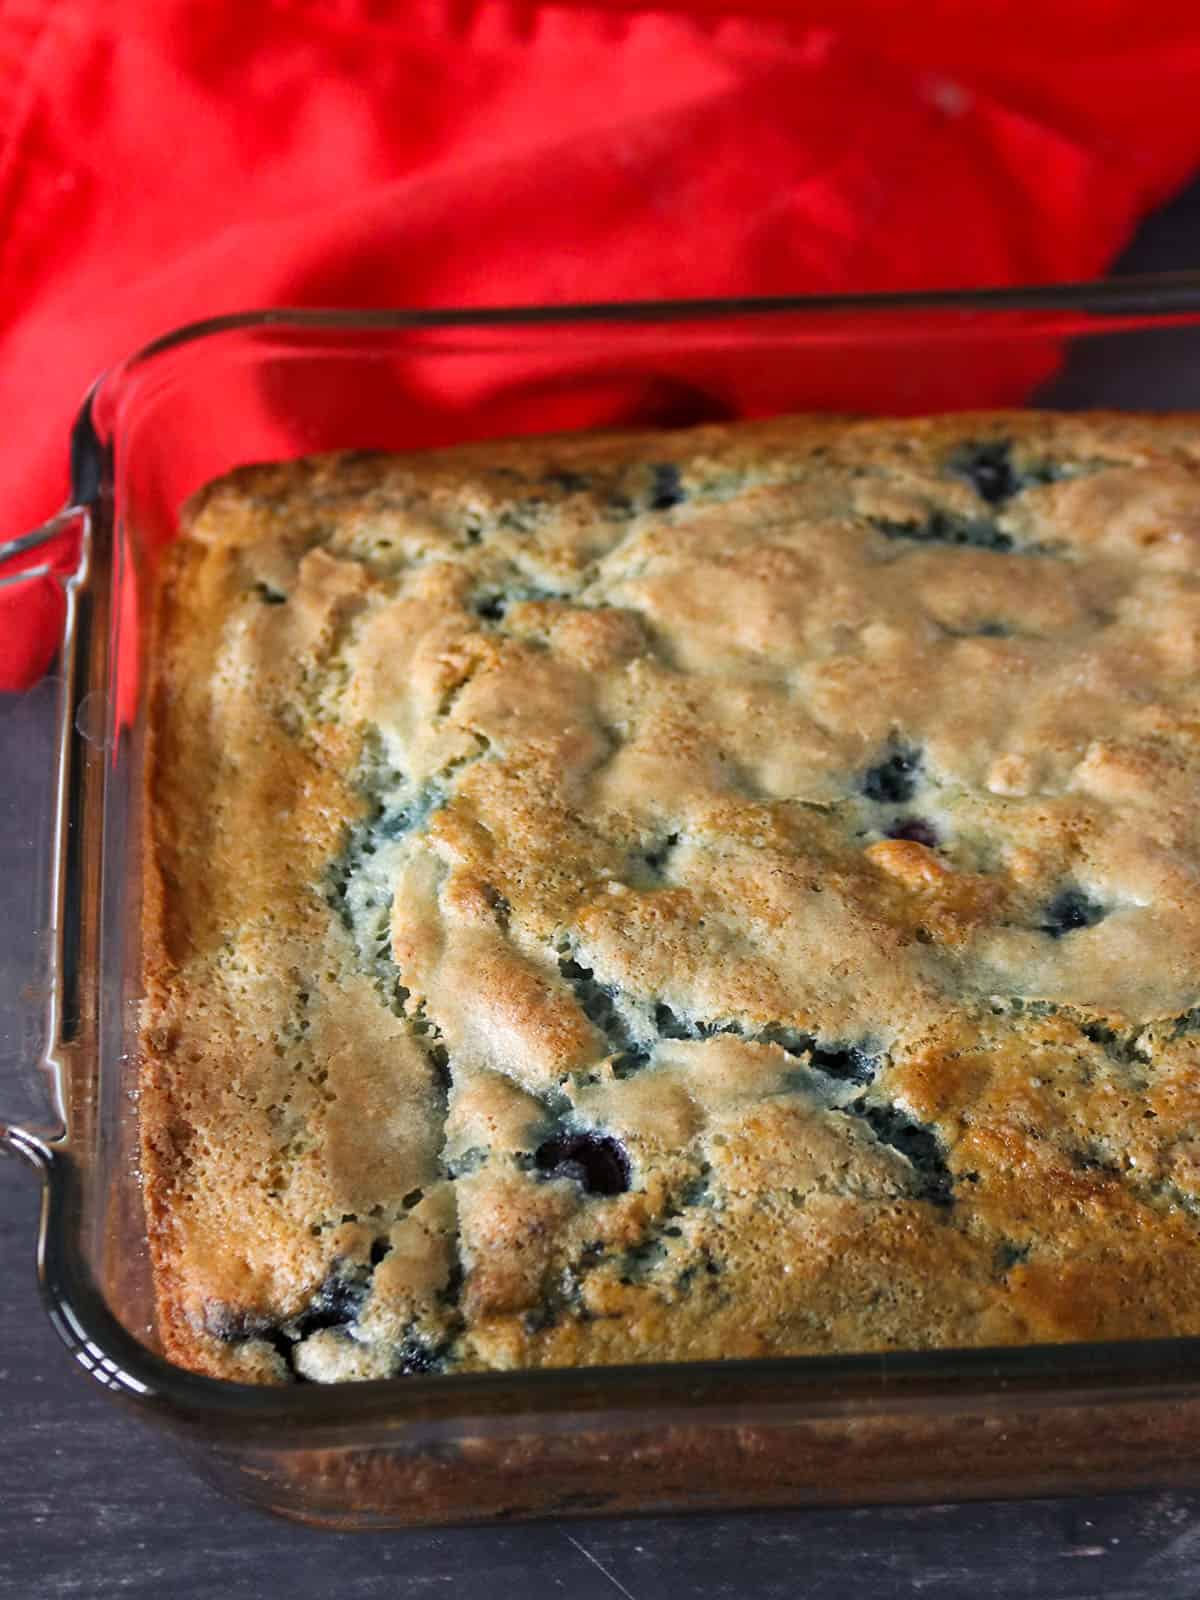 The freshly baked Blueberry breakfast cake.